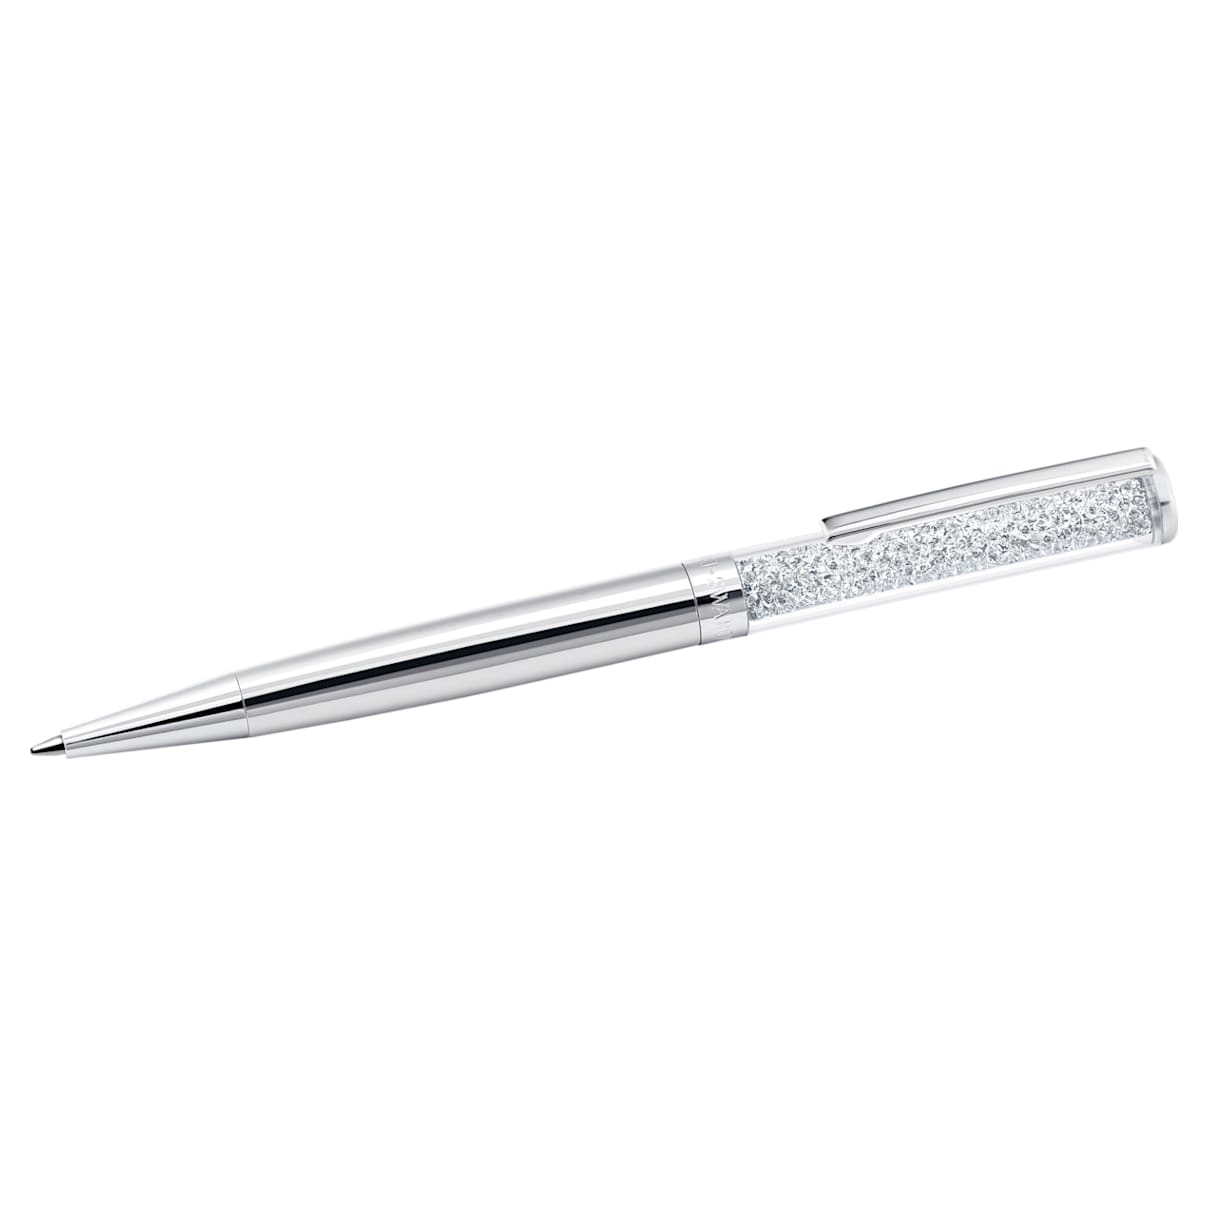 Crystalline Ballpoint Pen, Chrome Plated